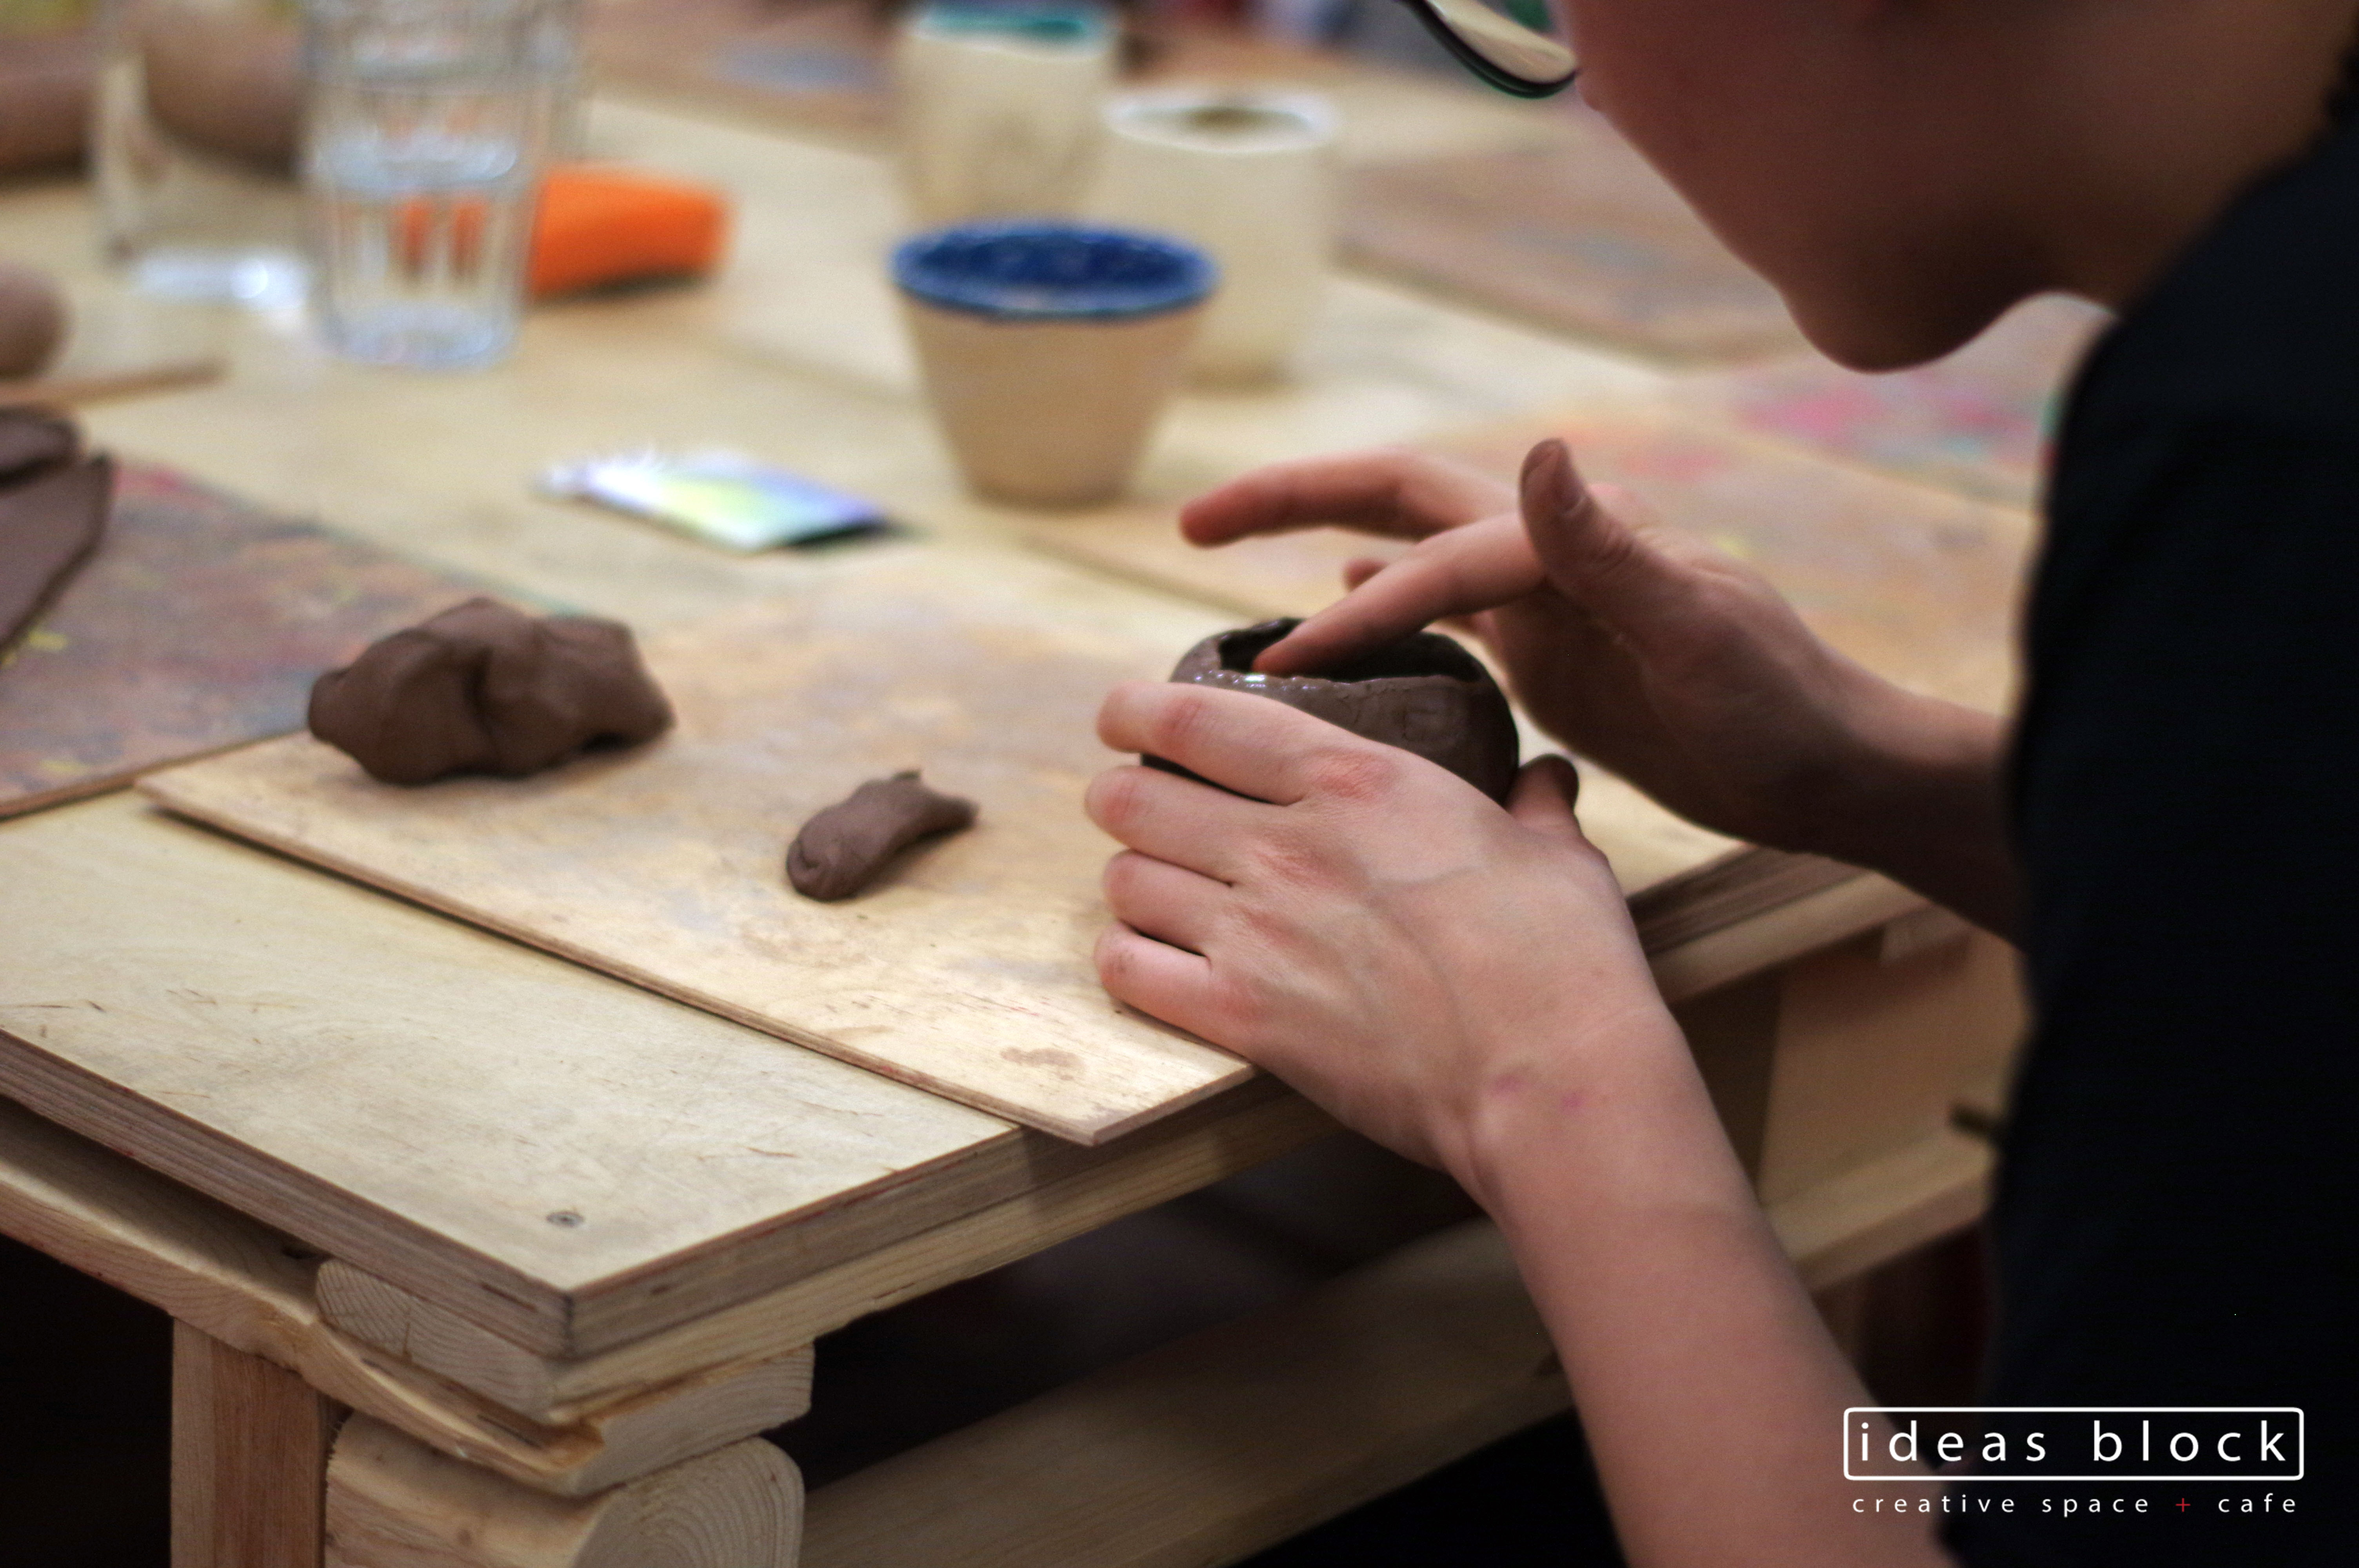 Ubi keramika - ceramics workshop